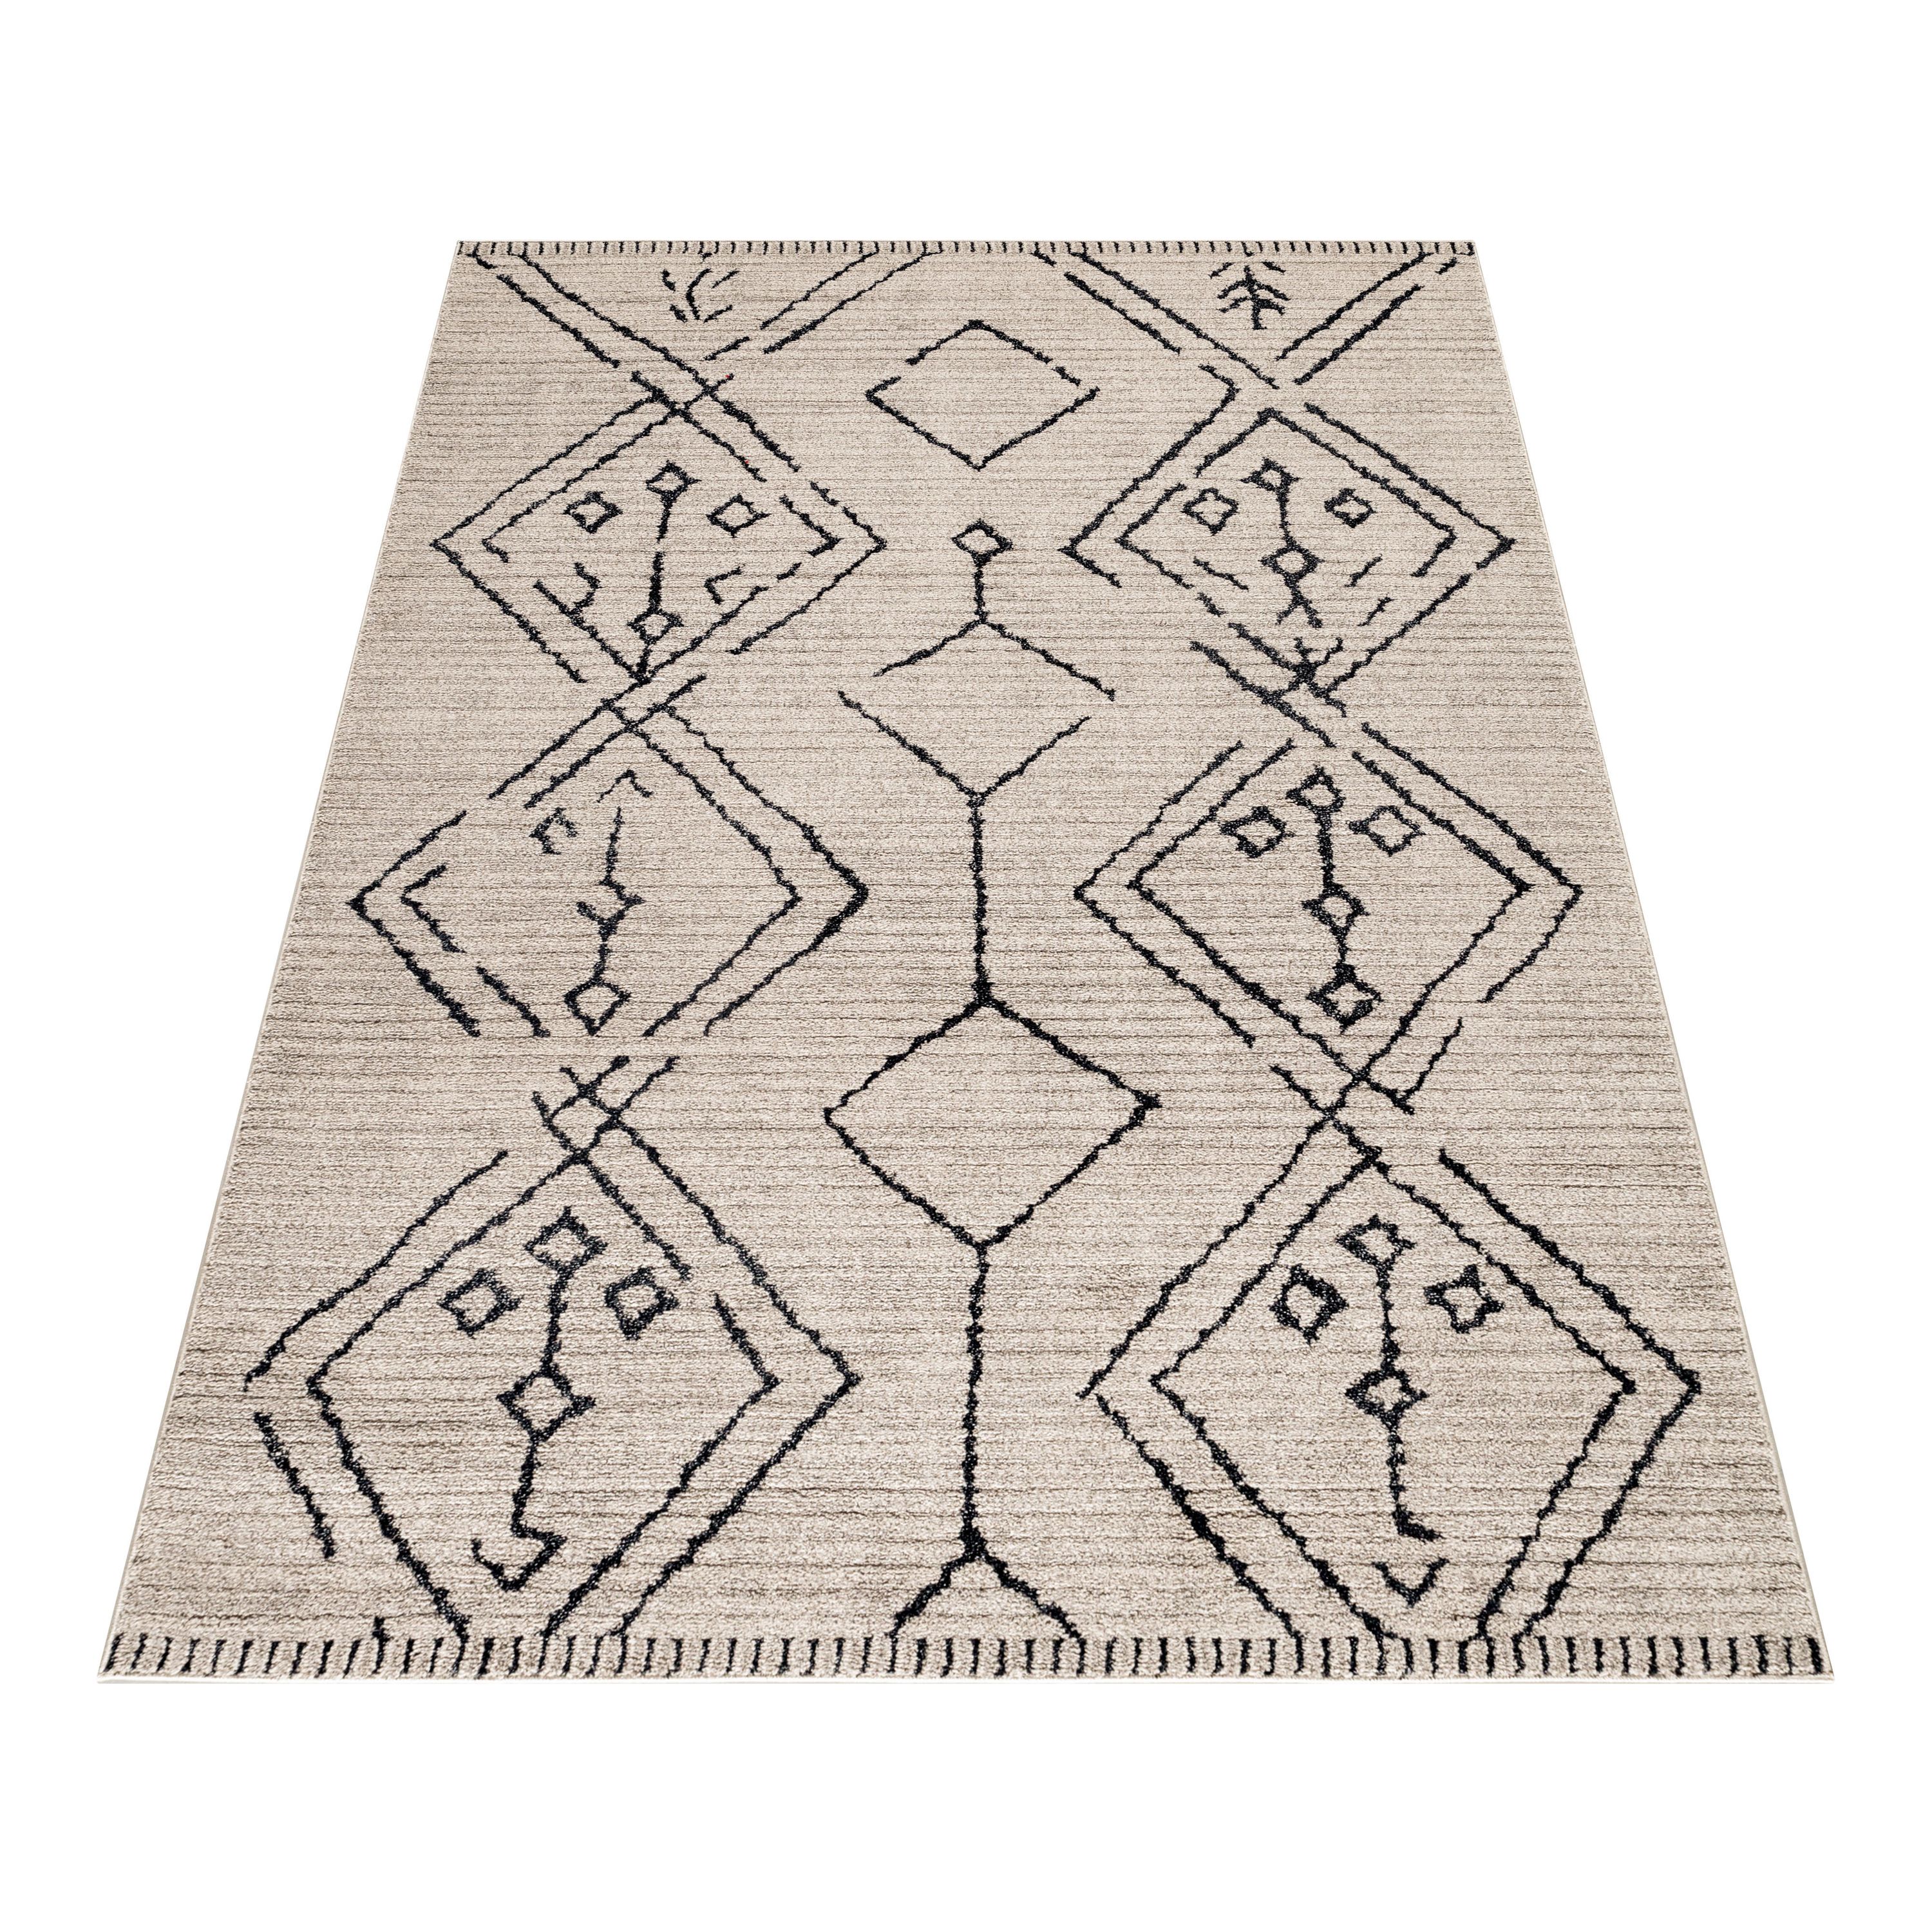 Wohnzimmer Teppich ROKKO Kurzflor Teppich Berber Stil Muster Traditionell